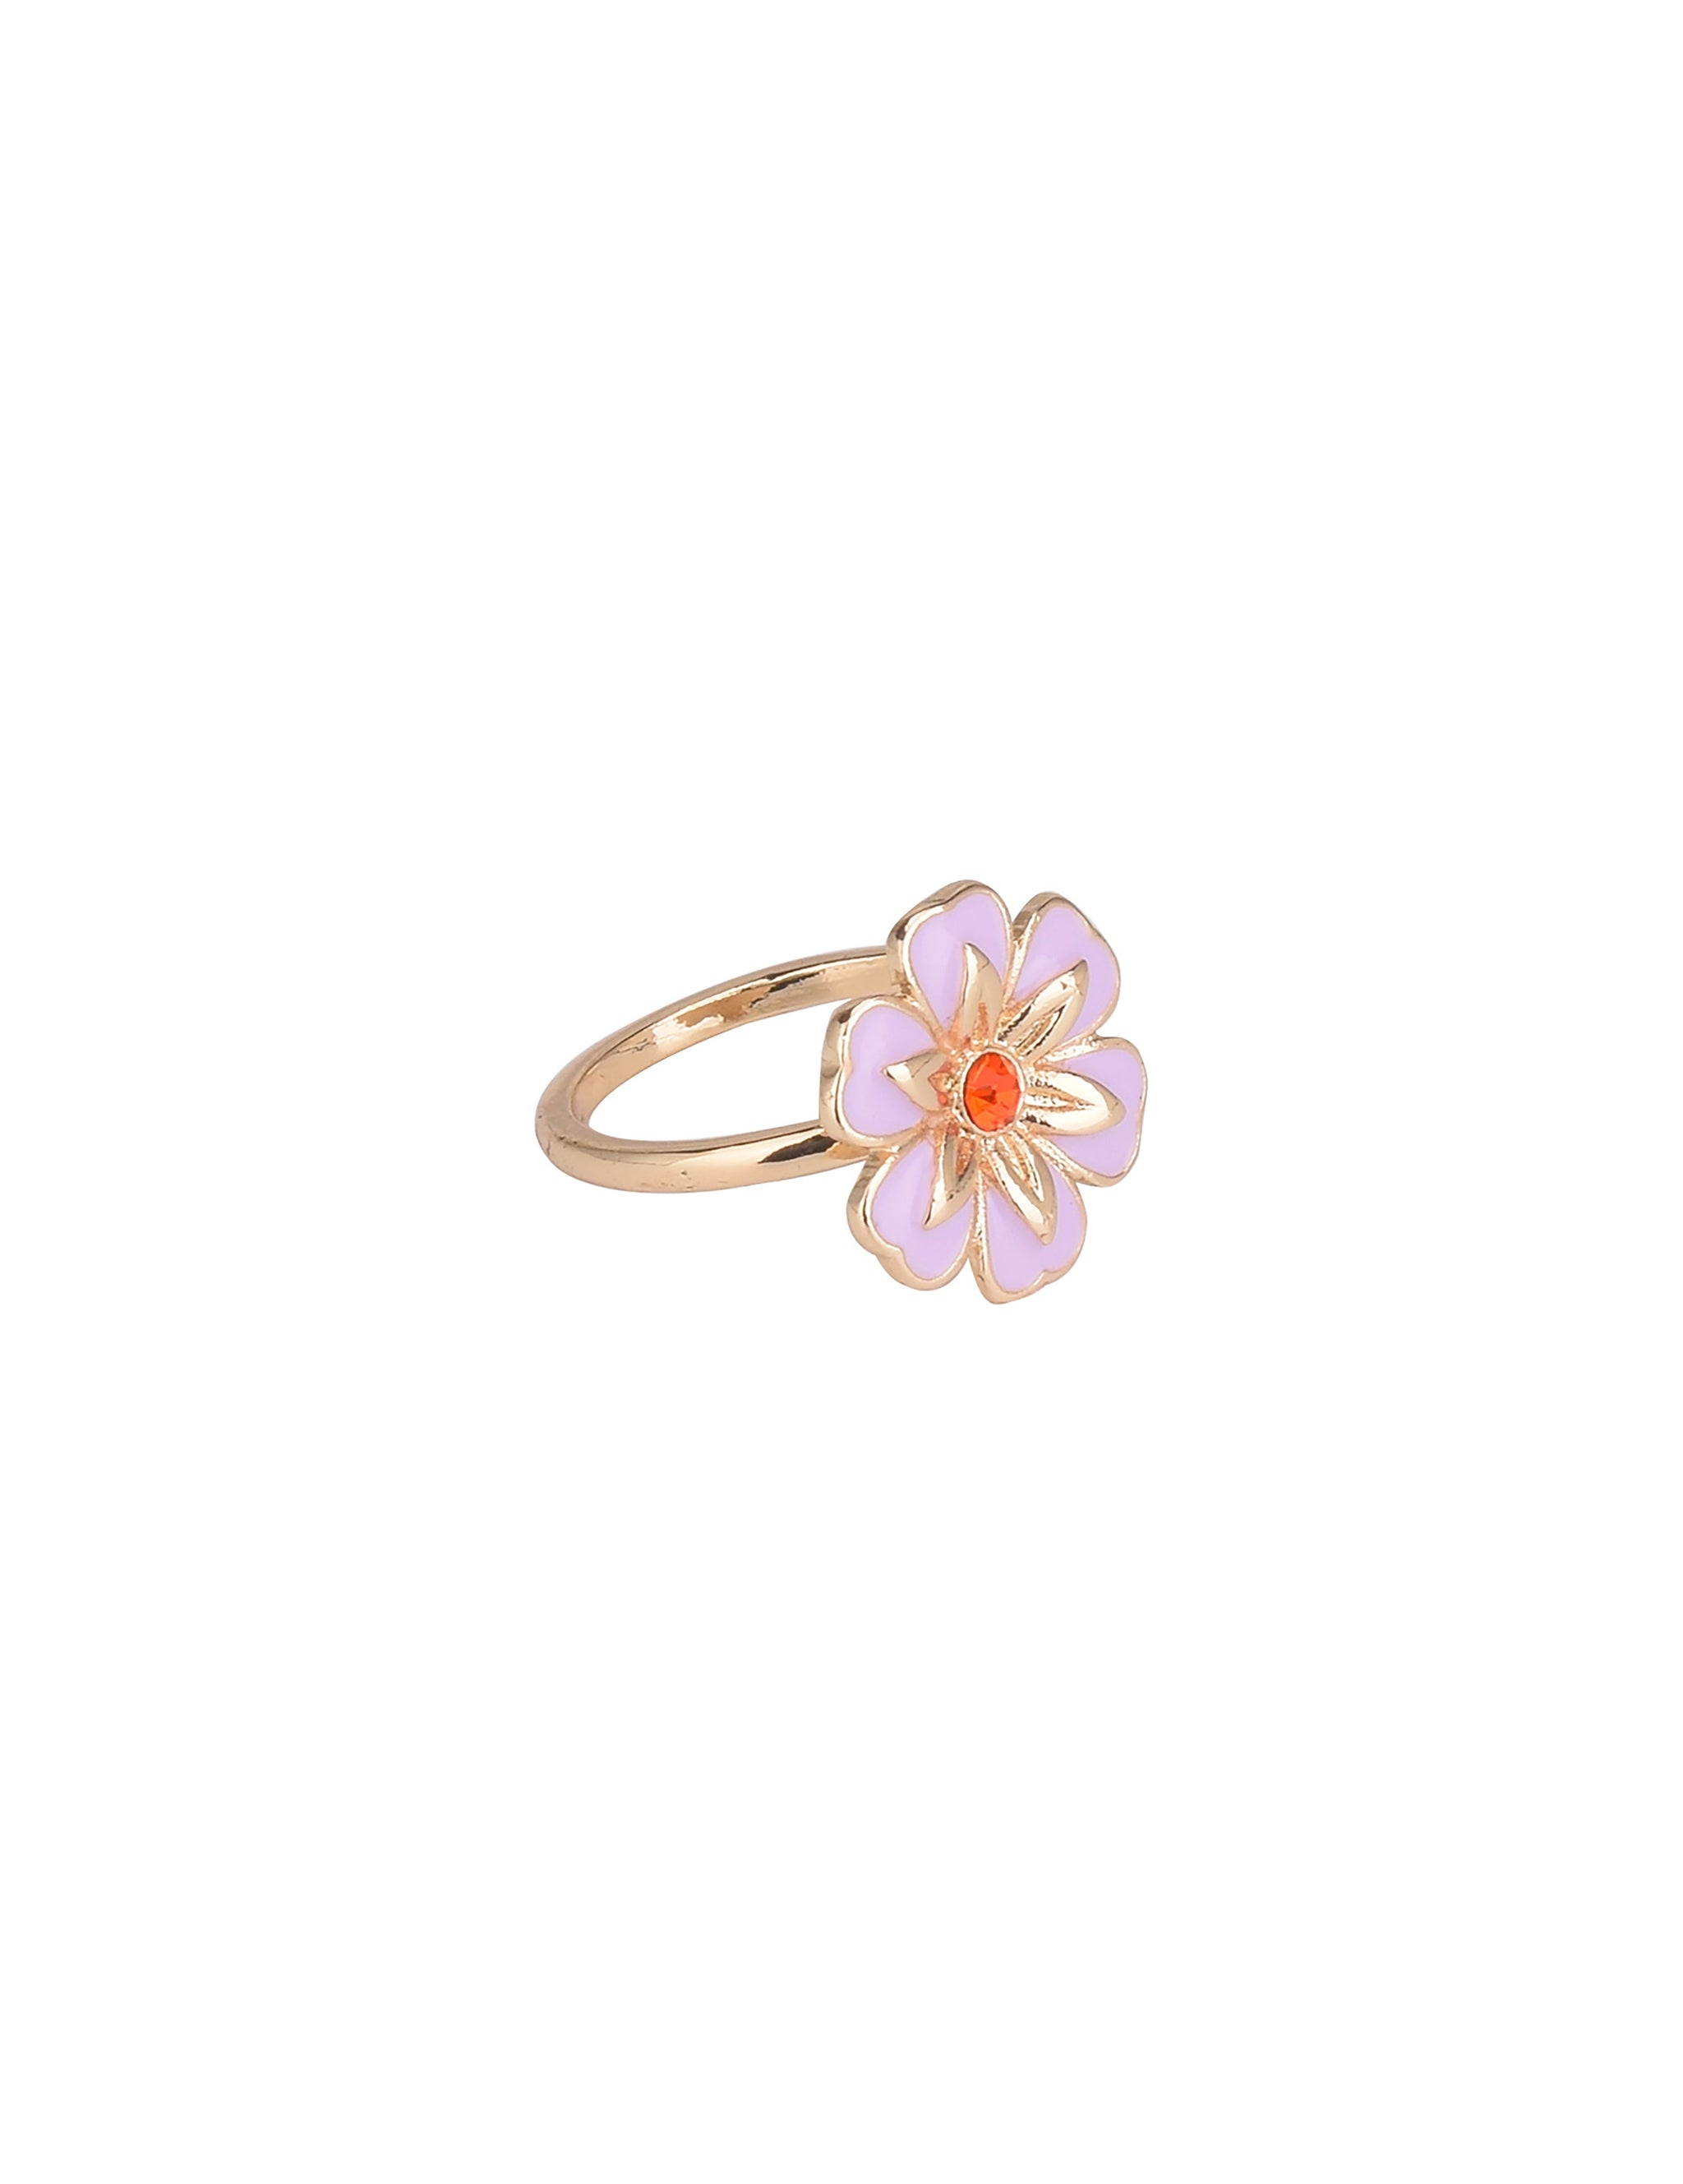 925 Sterling Silver Enamel Designer Flower Ring, White Enamel Flower Ring |  eBay